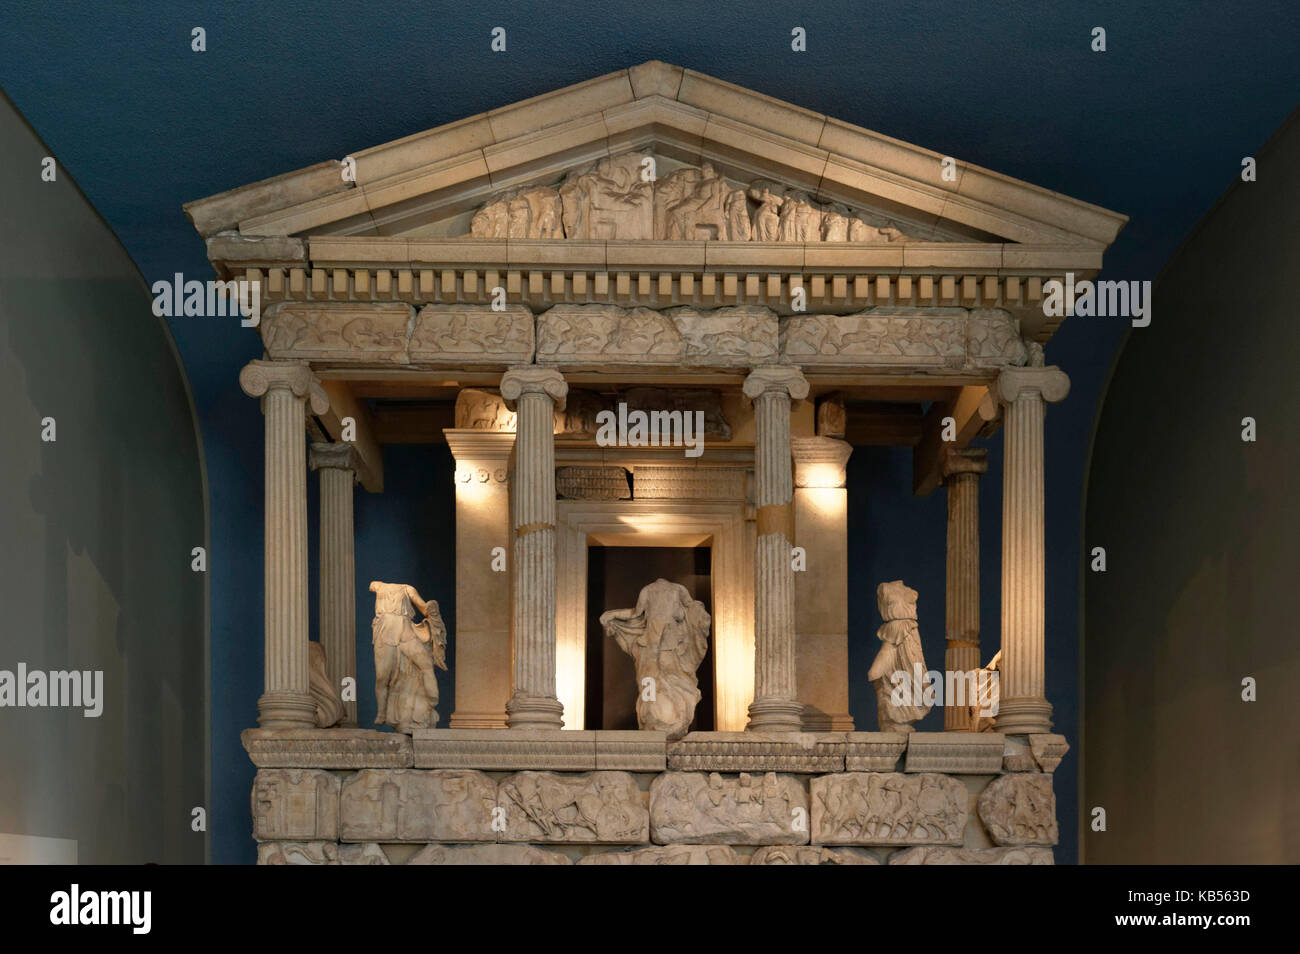 Royaume-uni, Londres, Bloomsbury, British museum, la Néréide monument de xanthos dans le sud-ouest de la Turquie, 5e siècle avant J.-C. Banque D'Images